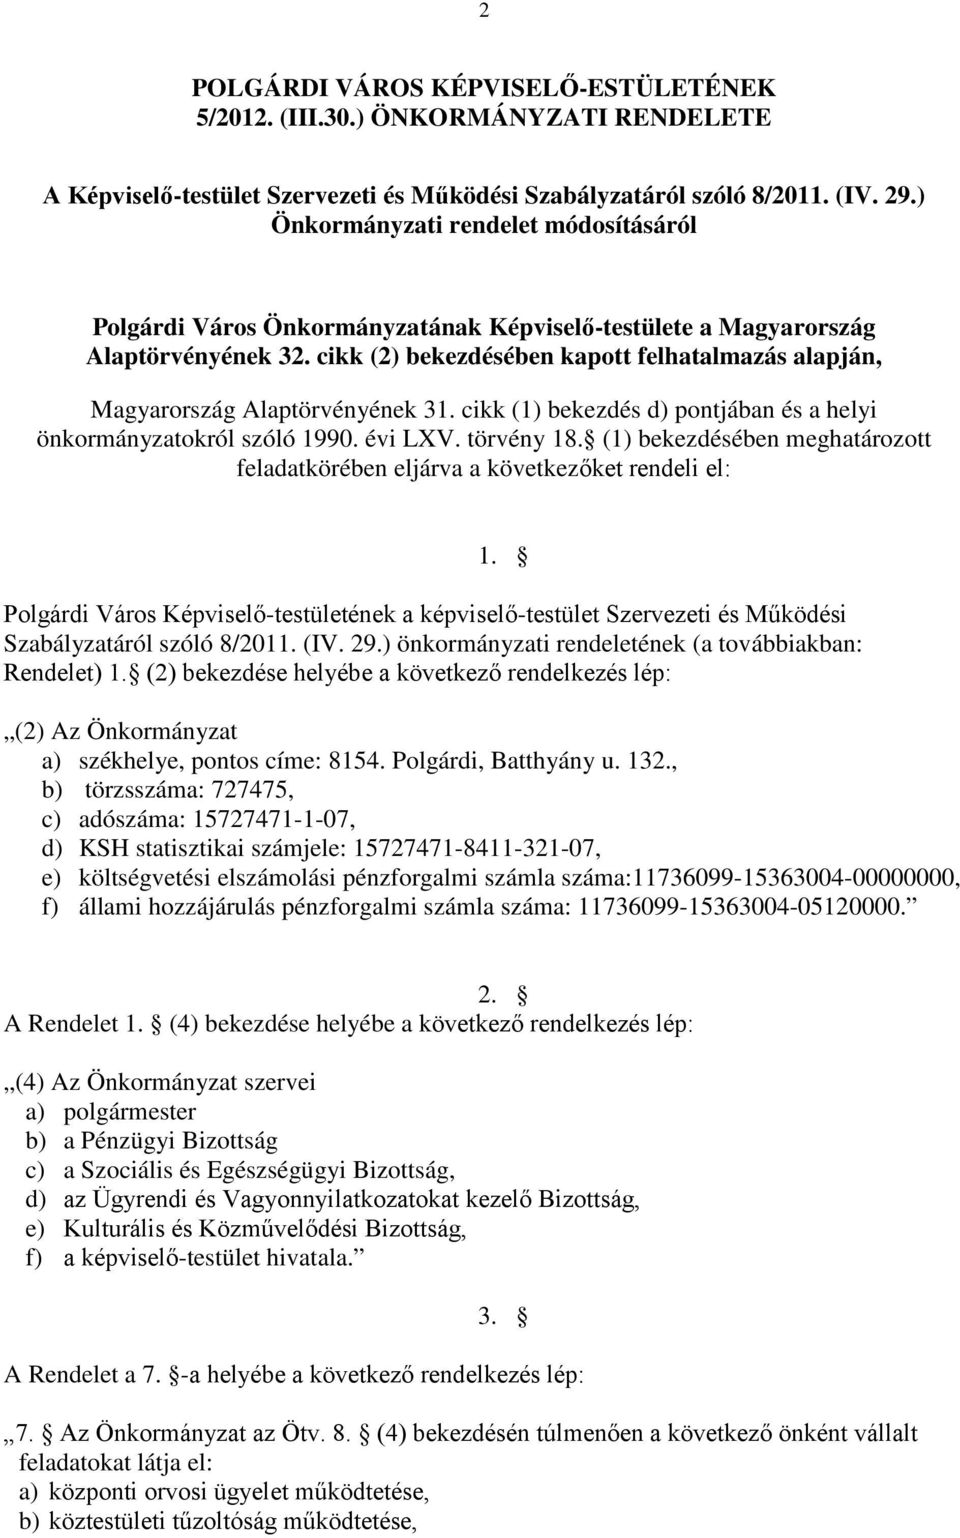 cikk (2) bekezdésében kapott felhatalmazás alapján, Magyarország Alaptörvényének 31. cikk (1) bekezdés d) pontjában és a helyi önkormányzatokról szóló 1990. évi LXV. törvény 18.